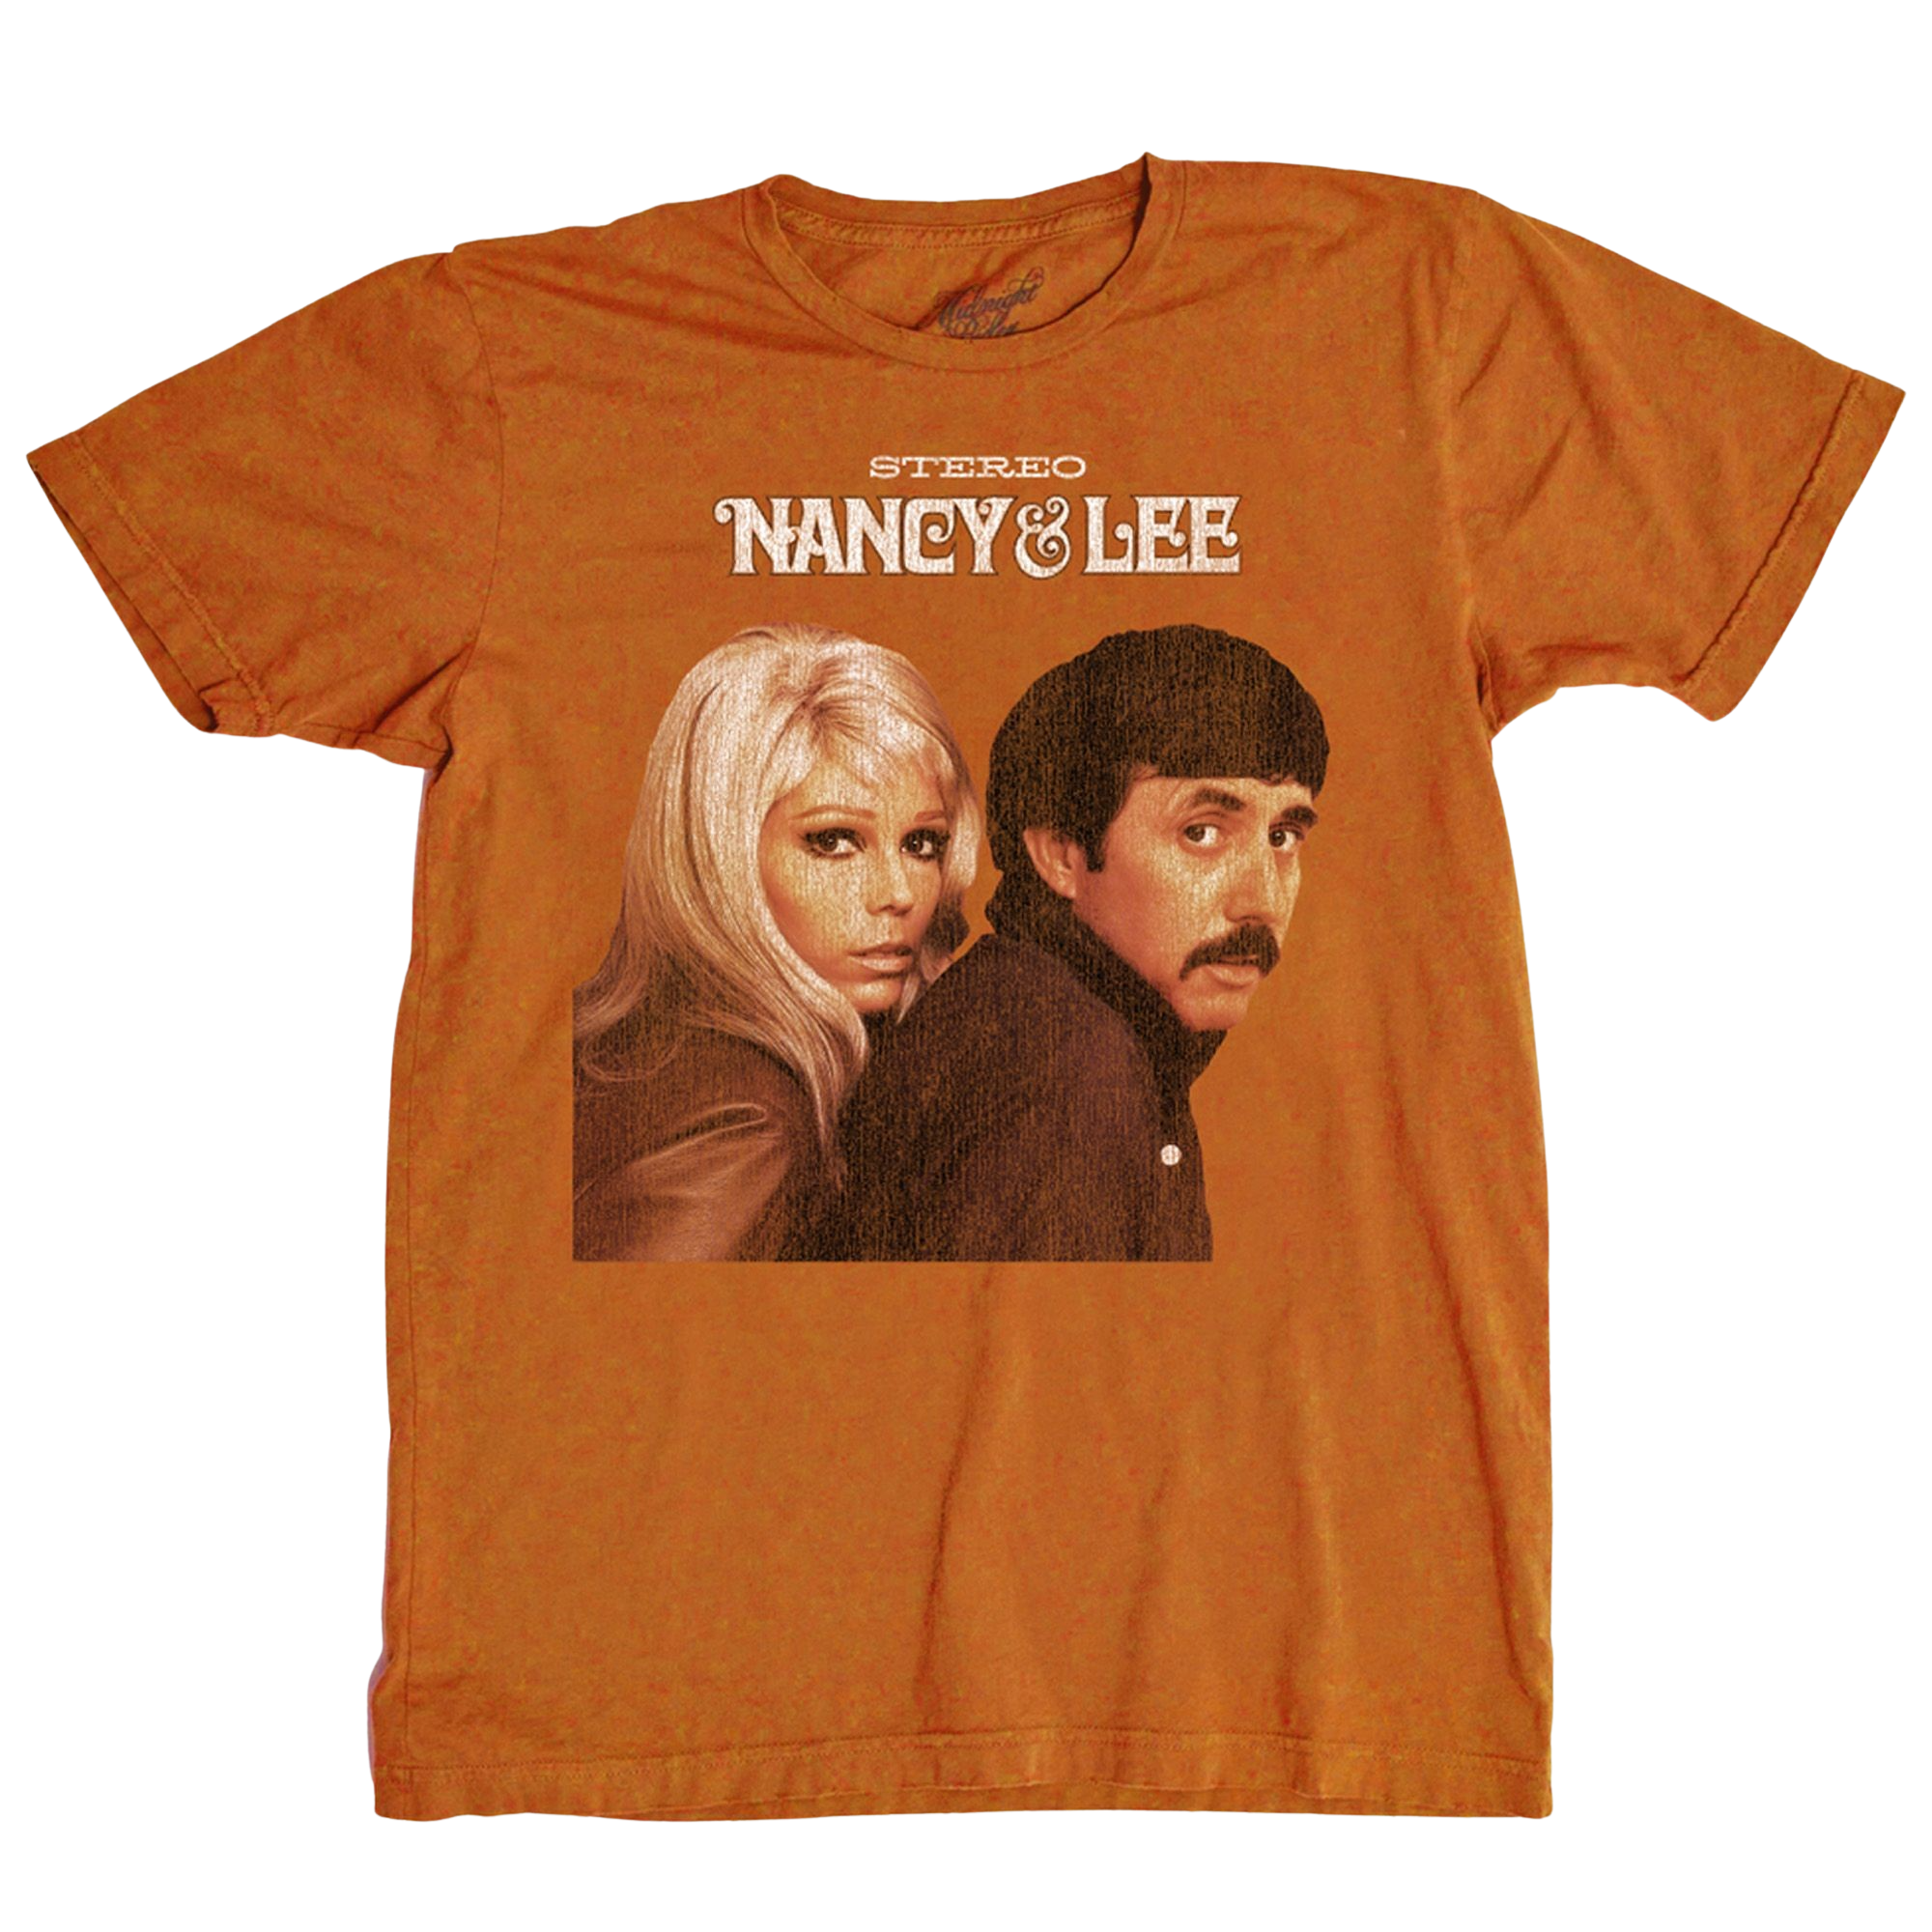 Nancy & Lee Midnight T-Shirt the Rider Light – in Attic